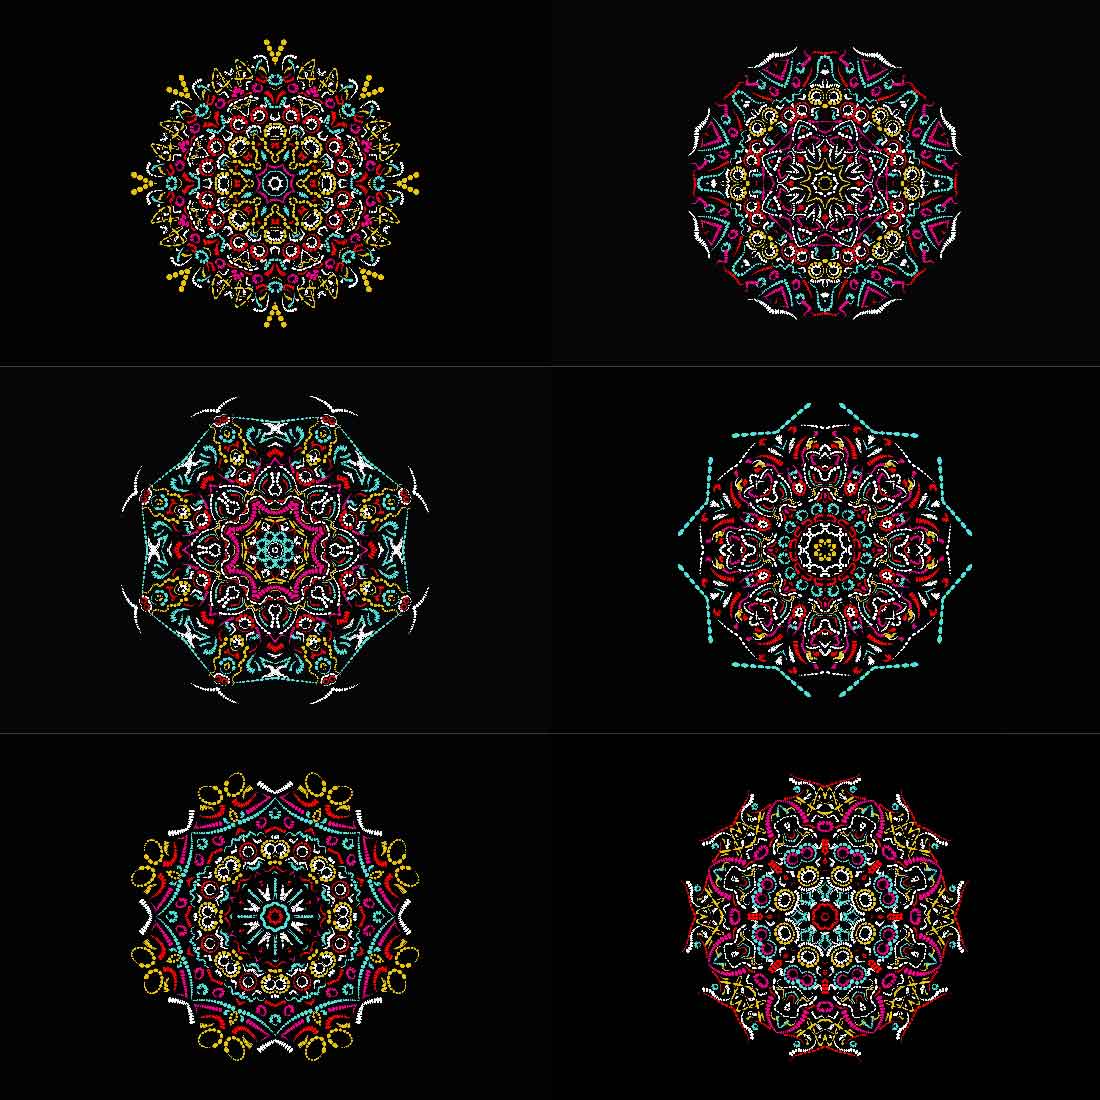 Mandala Art Bundles cover image.